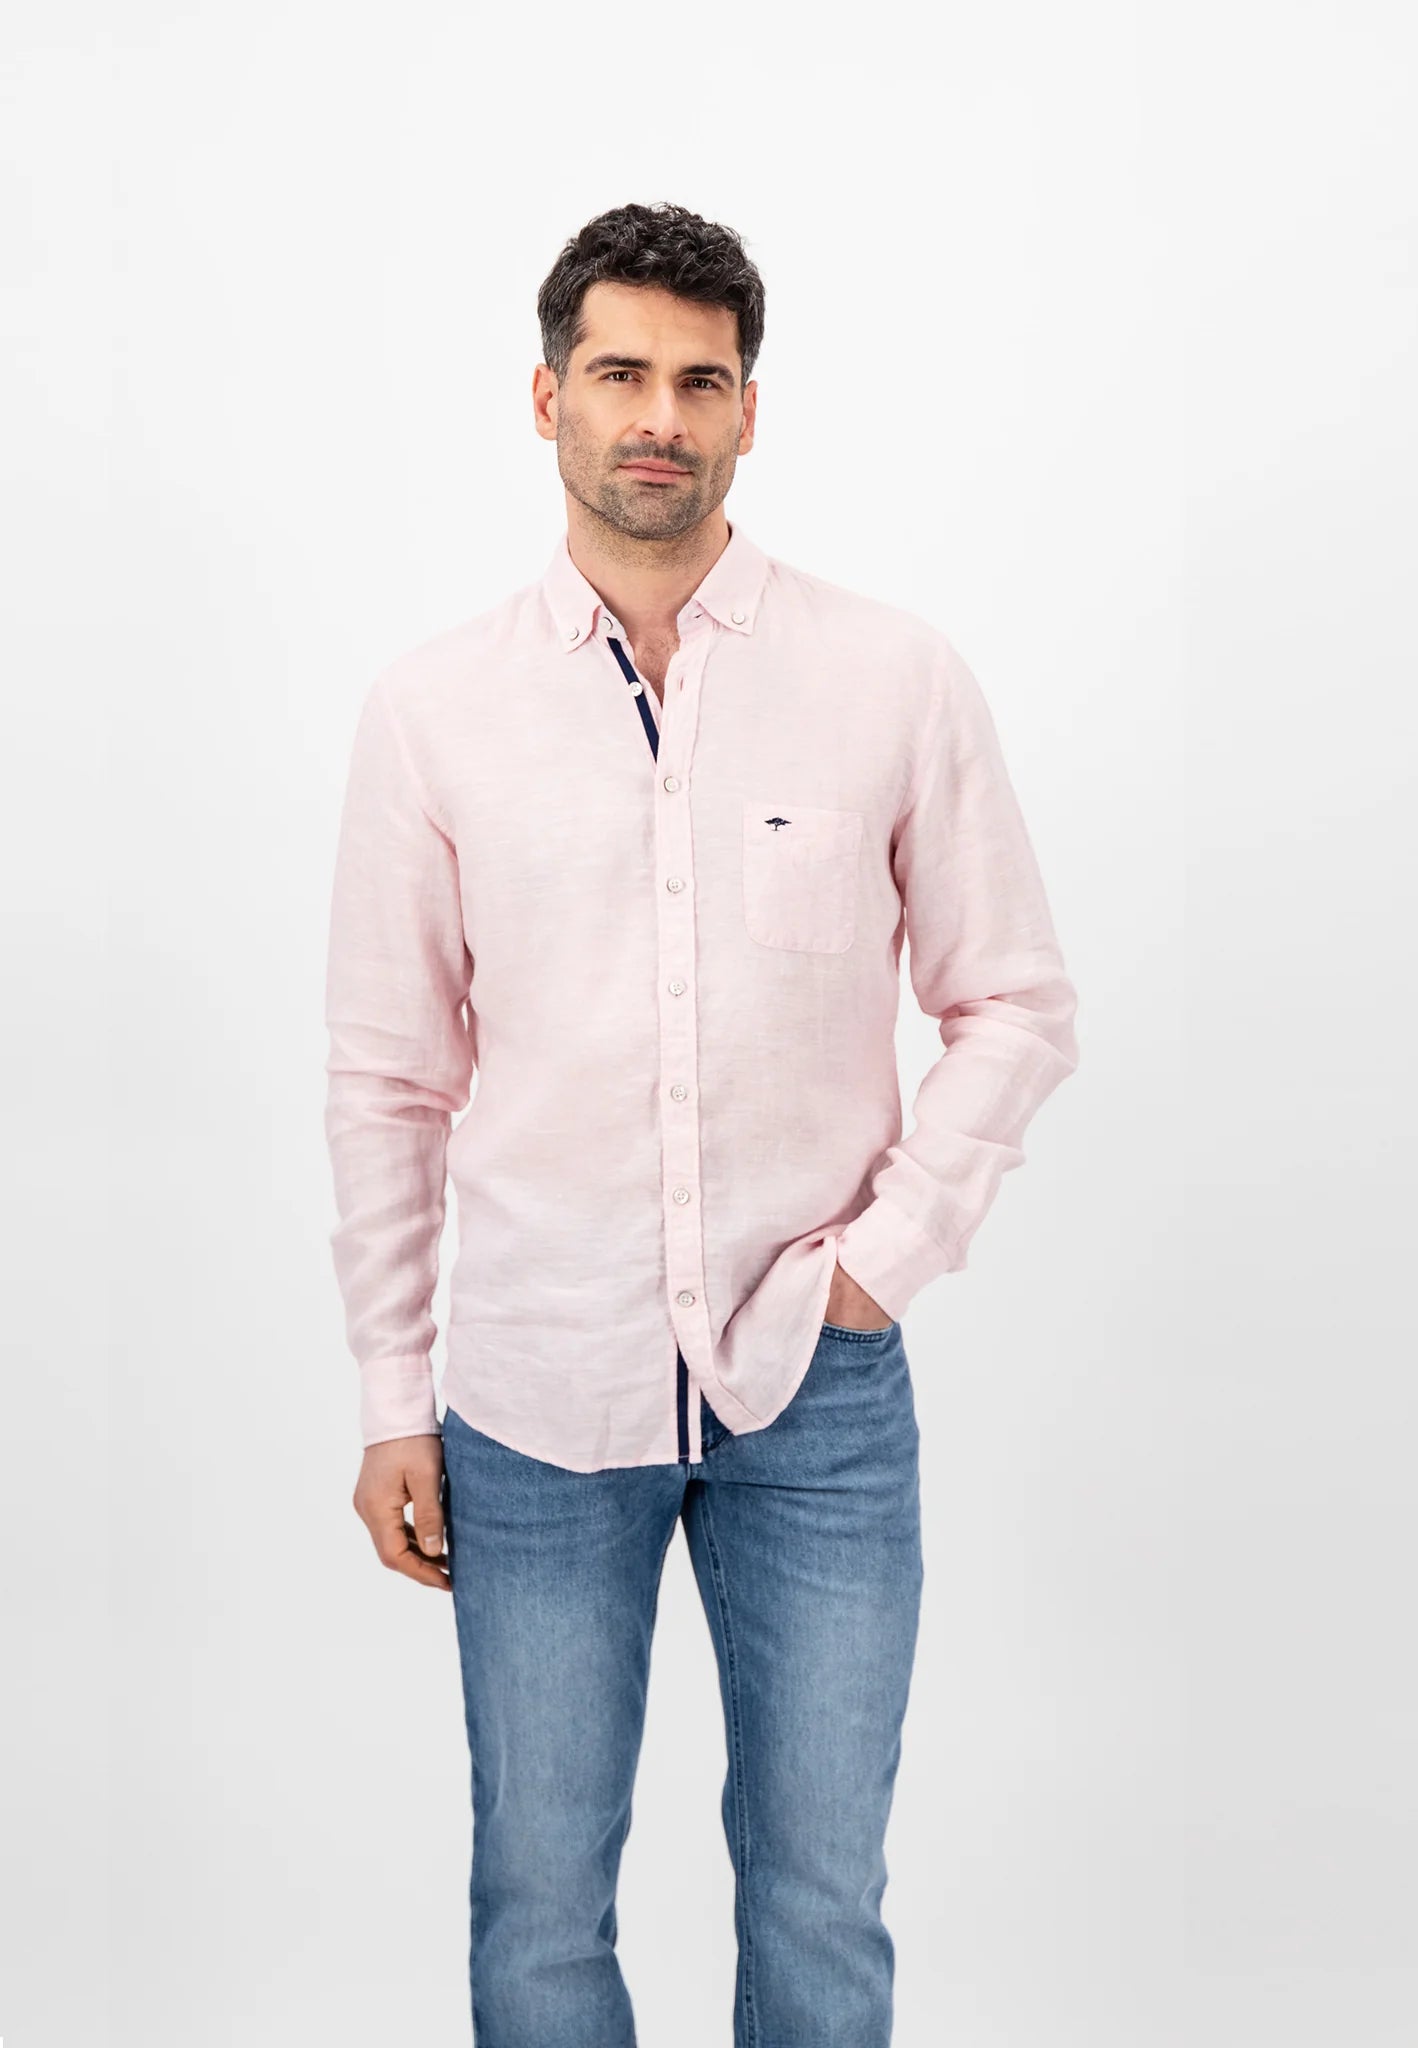 FYNCH HATTON Pure Linen Shirt - Men's – Blush Pink